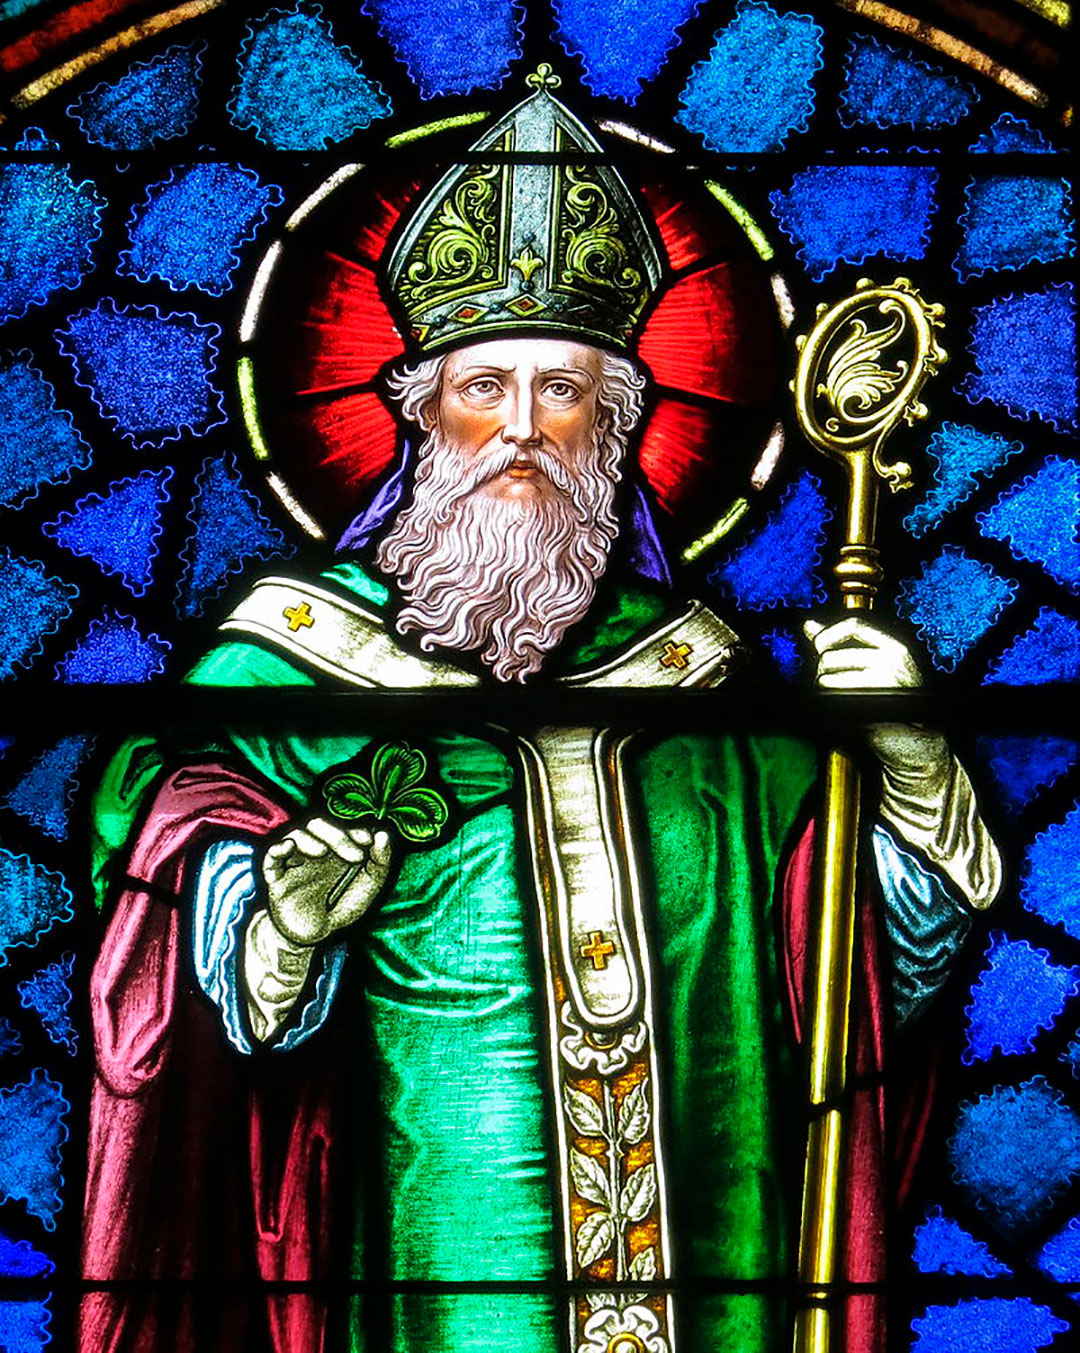 Patricio viajó a Roma y el Papa Celestino I, alrededor del año 423, lo envió a Irlanda para predicar la palabra de Dios